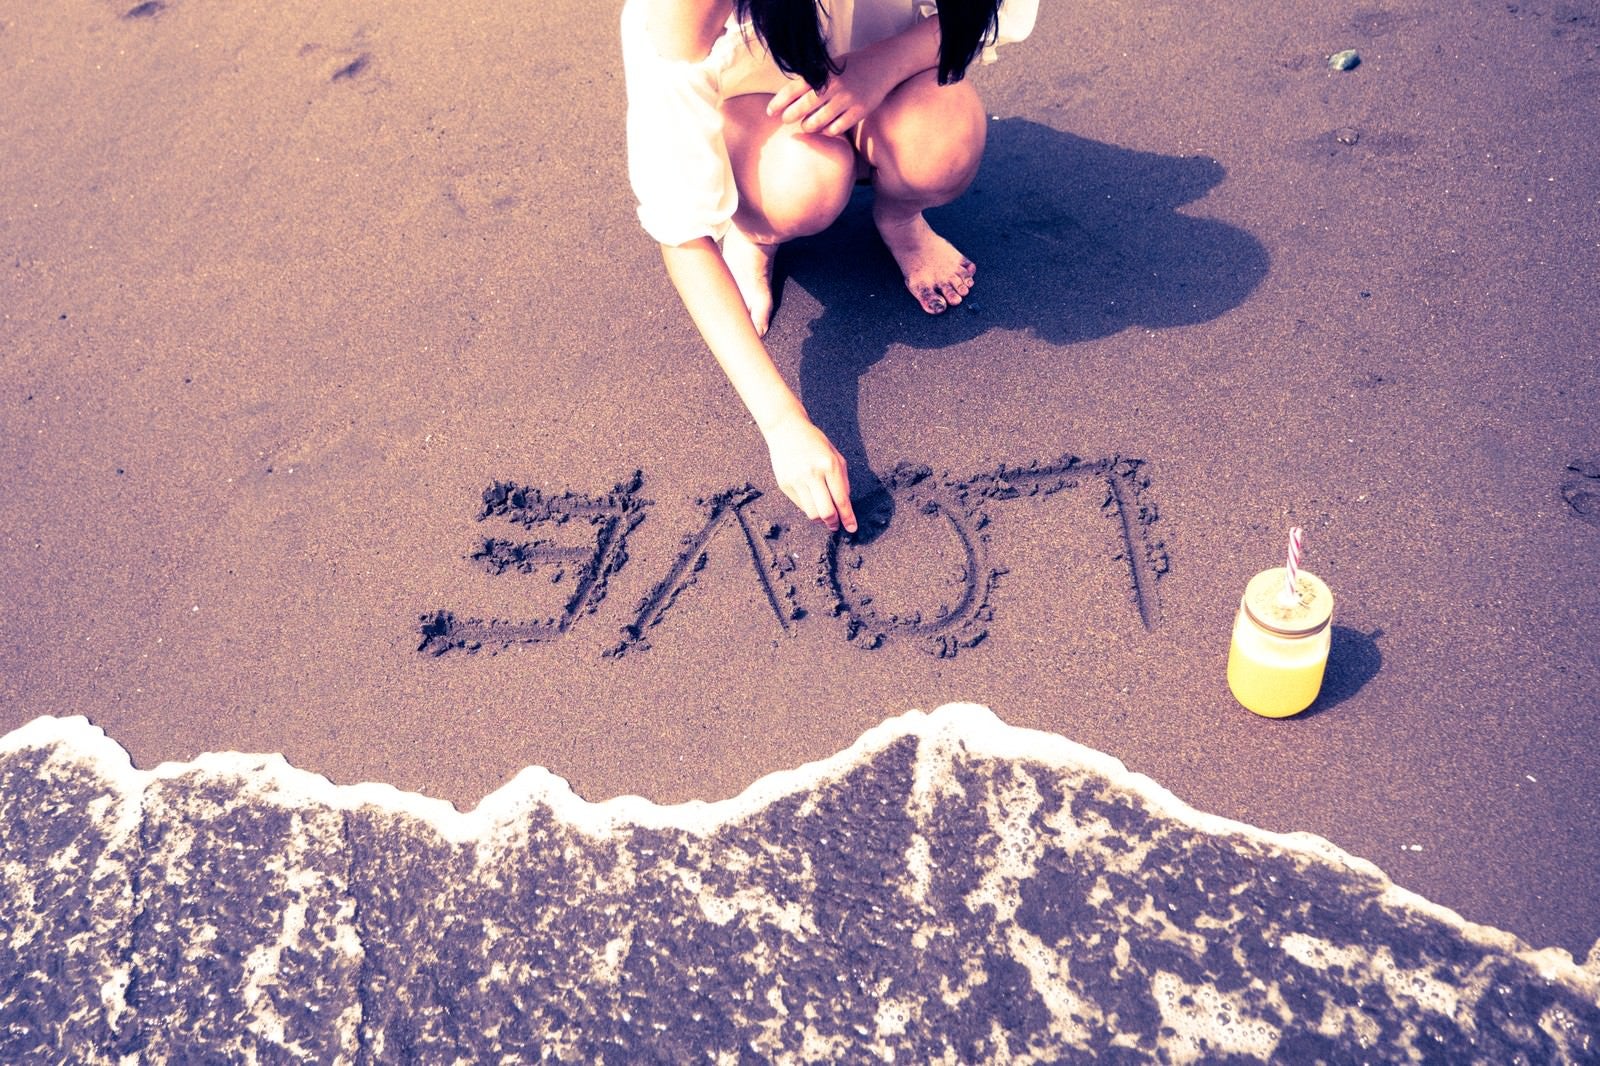 「砂浜に書いたLOVEの文字」の写真